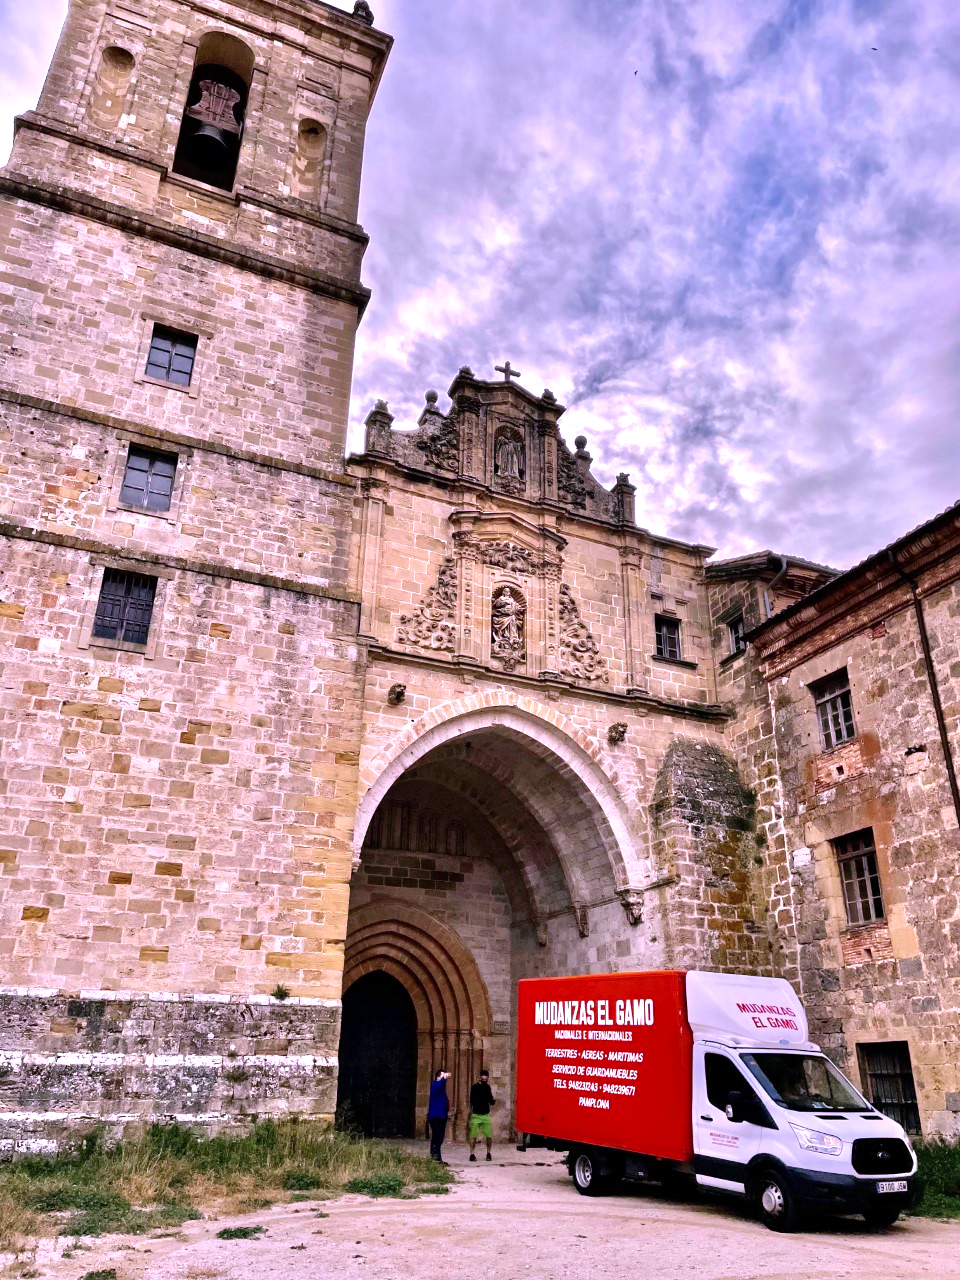 Mudanzas Gamo en Monasterio de Irache, Navarra